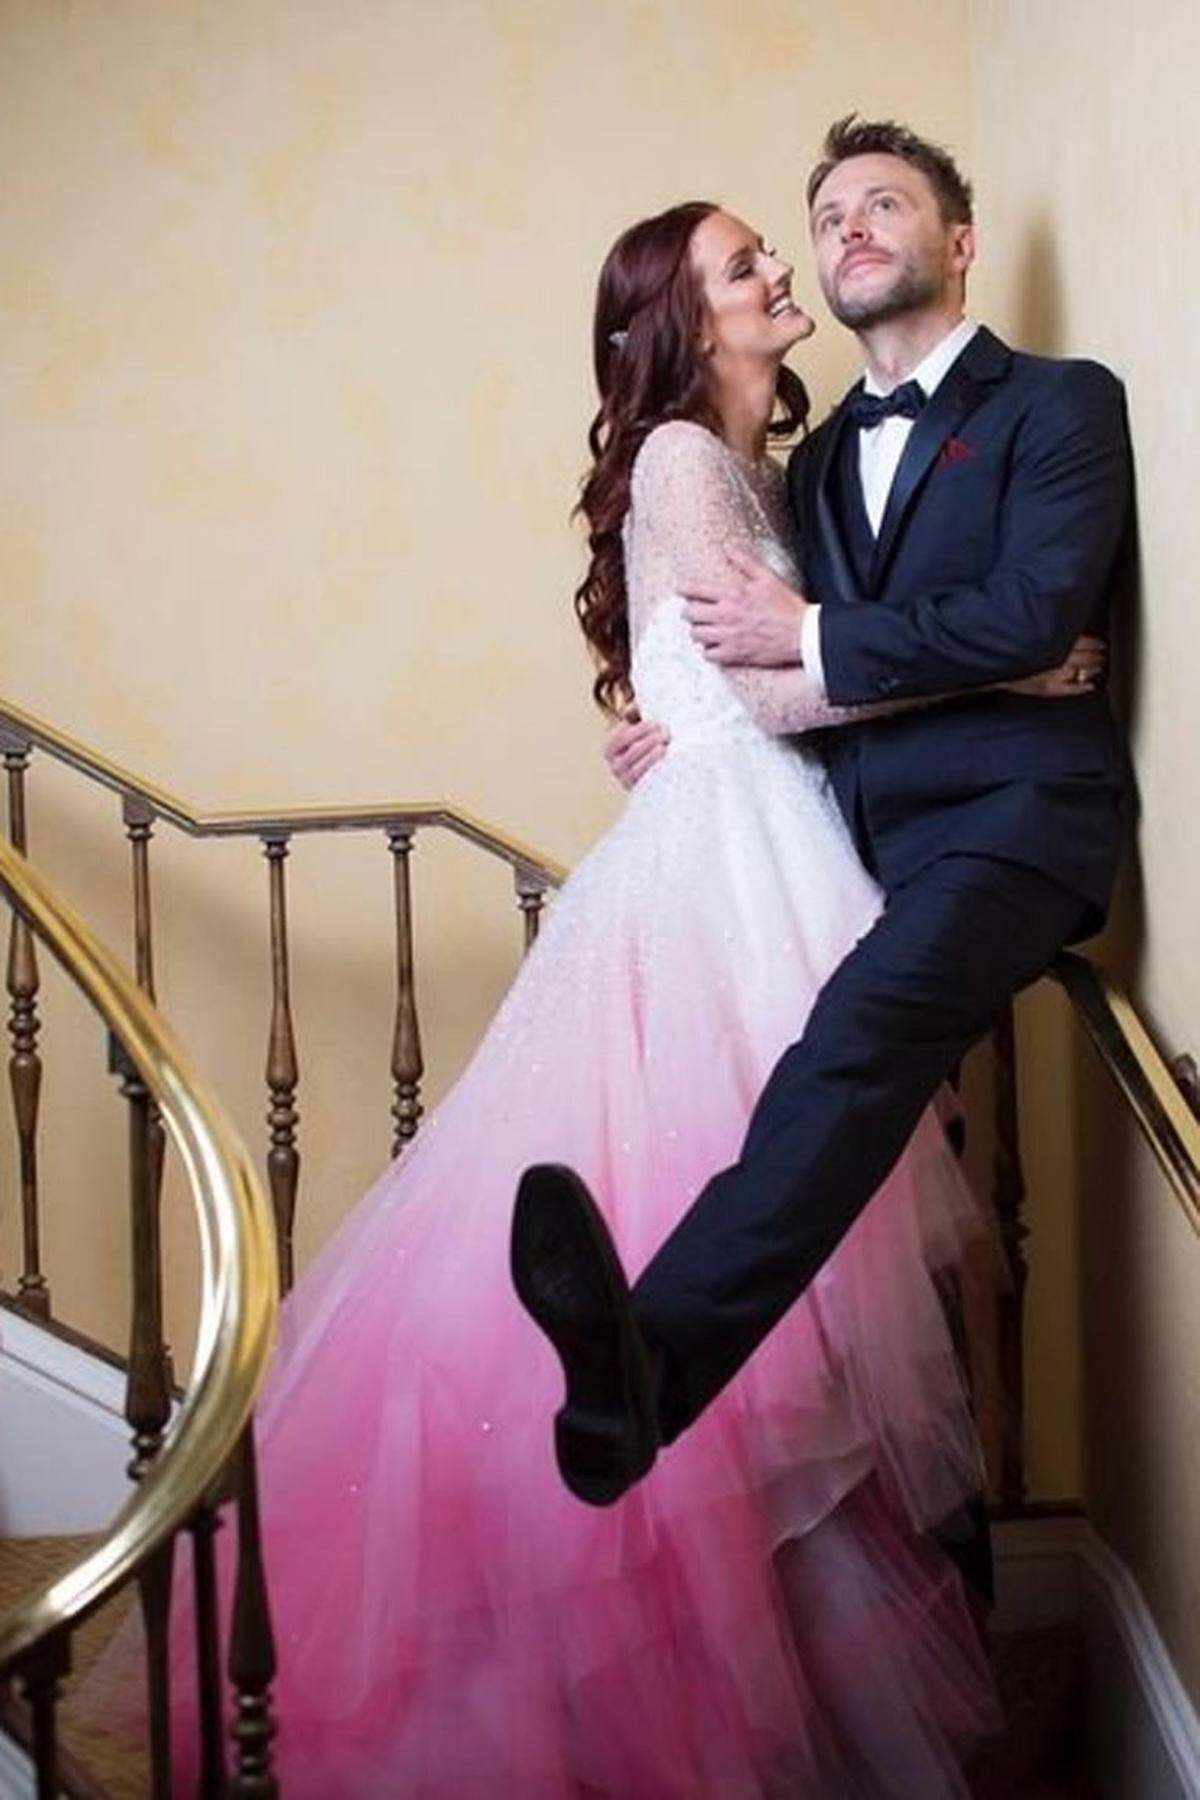 In Kalifornien geben sich im August 2016 Model Lydia Hearst und Comedian Chris Hardwick in einer Zeremonie mit 450 geladenen Gästen das Jawort. Sie trägt einen rosigen Farbverlauf von Christian Siriano, er einen dunkelblauen Smoking von Prada.